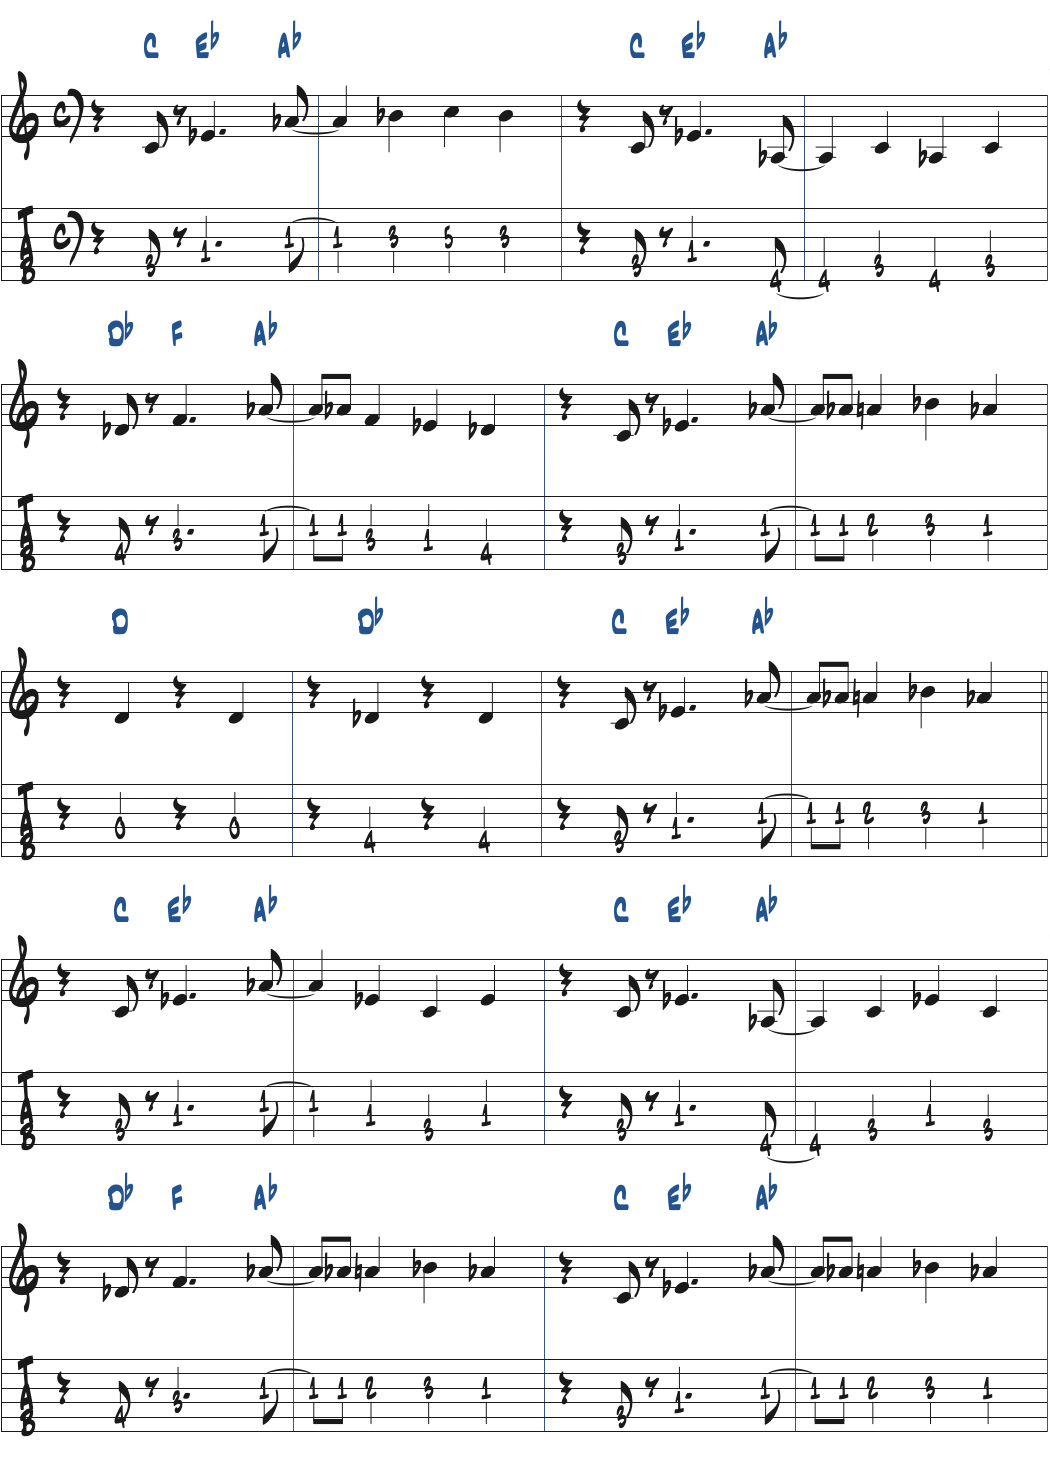 Cousin Mary前テーマのベースライン楽譜ページ1